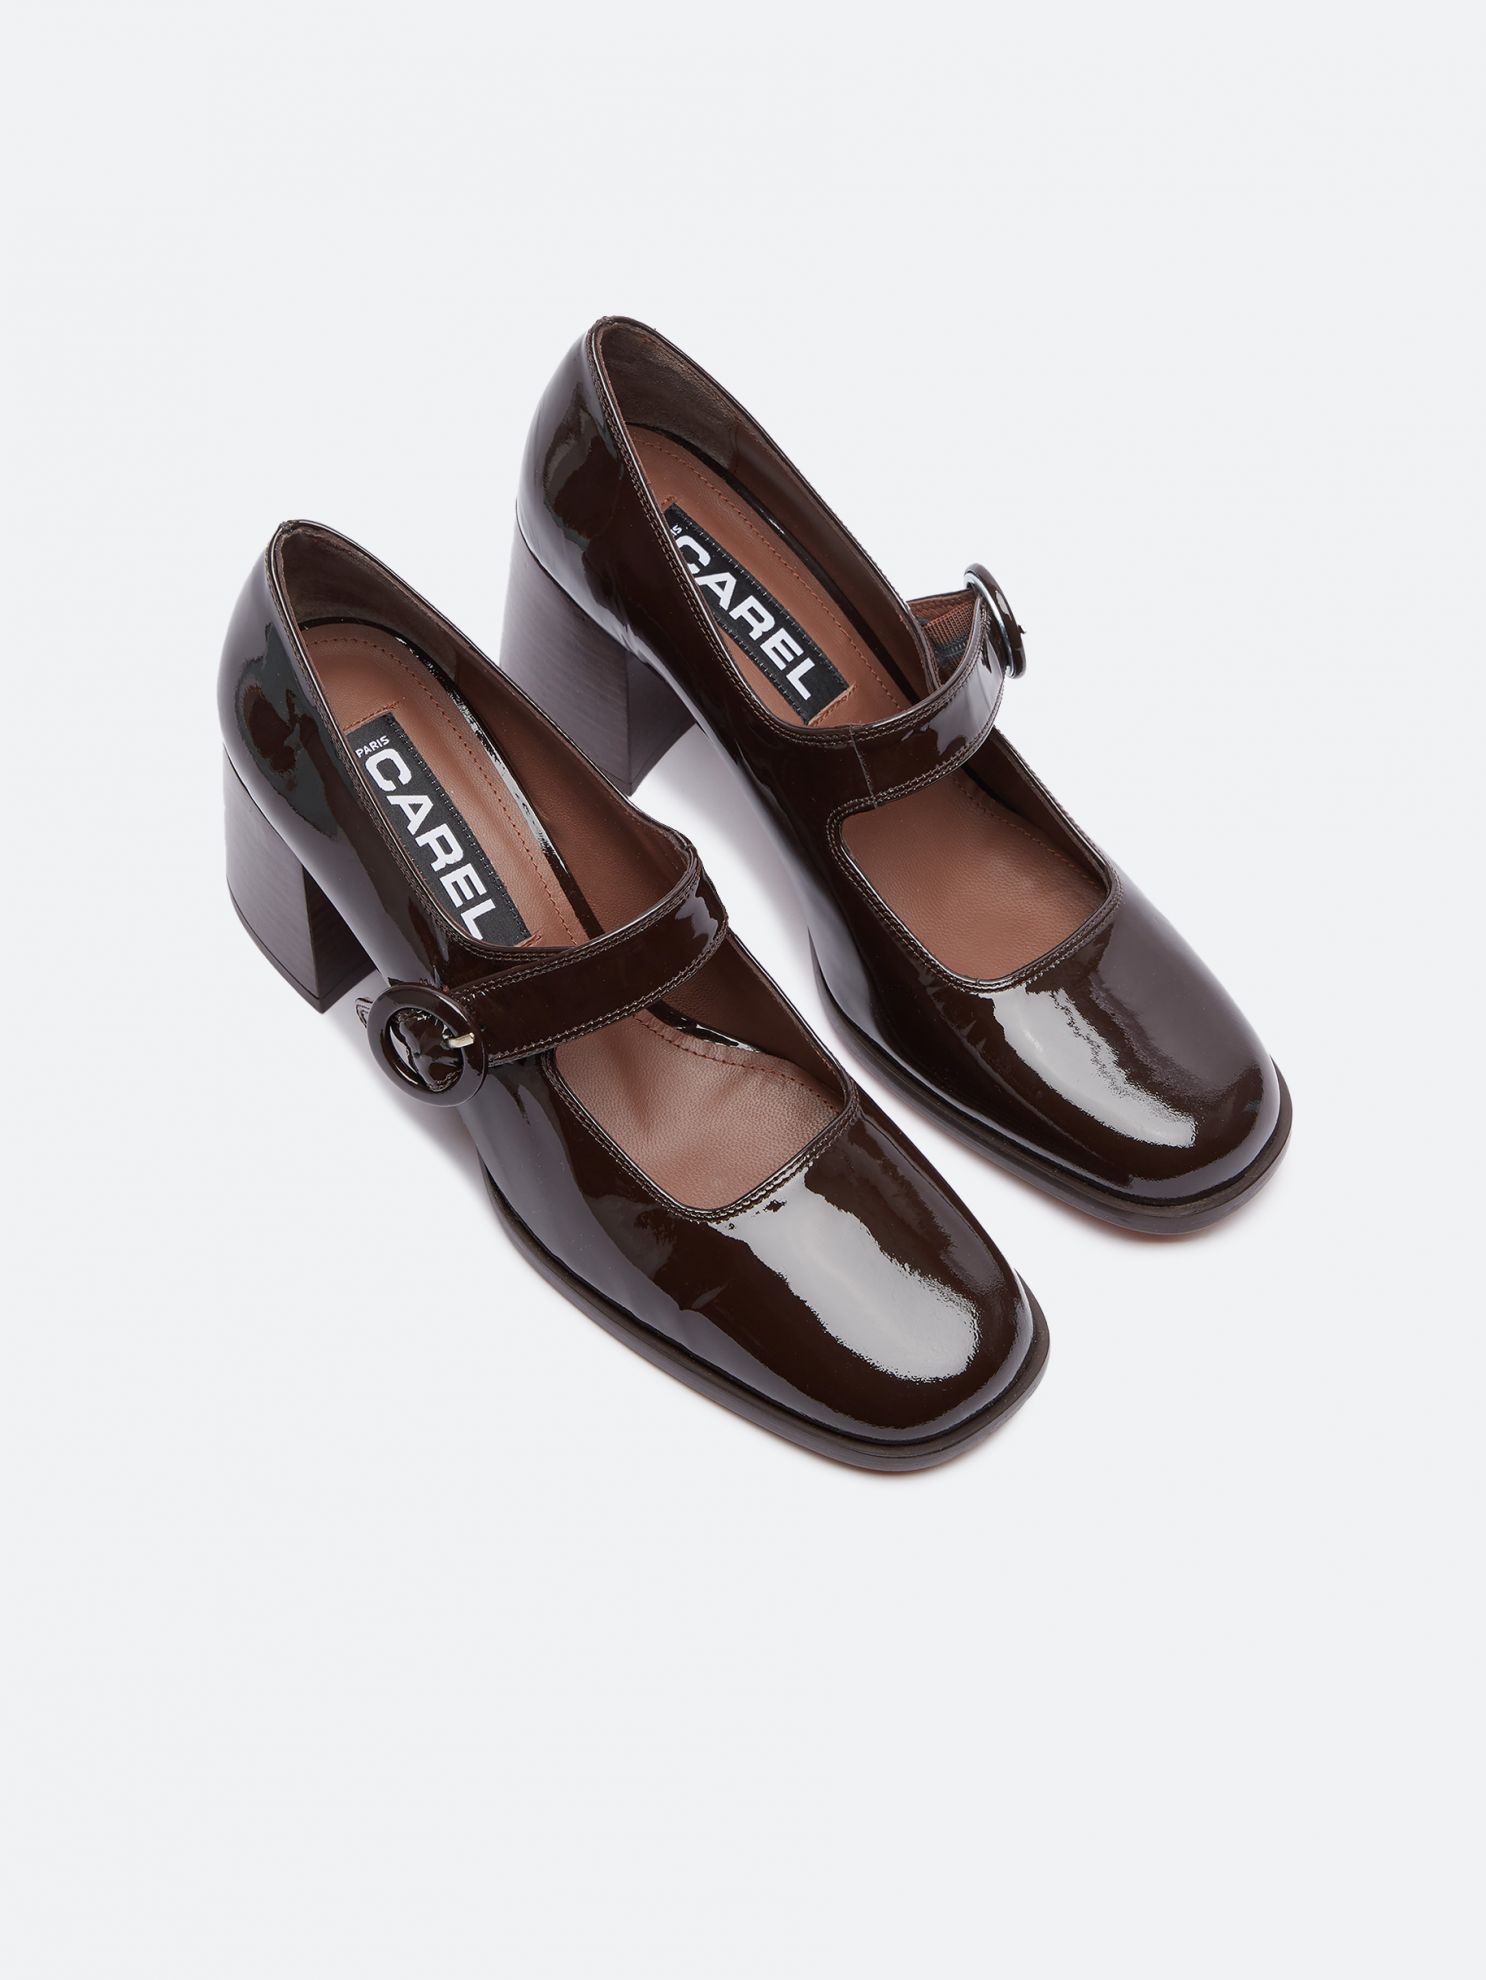 CAREN chocolate patent leather Mary Janes pumps | Carel Paris Shoes